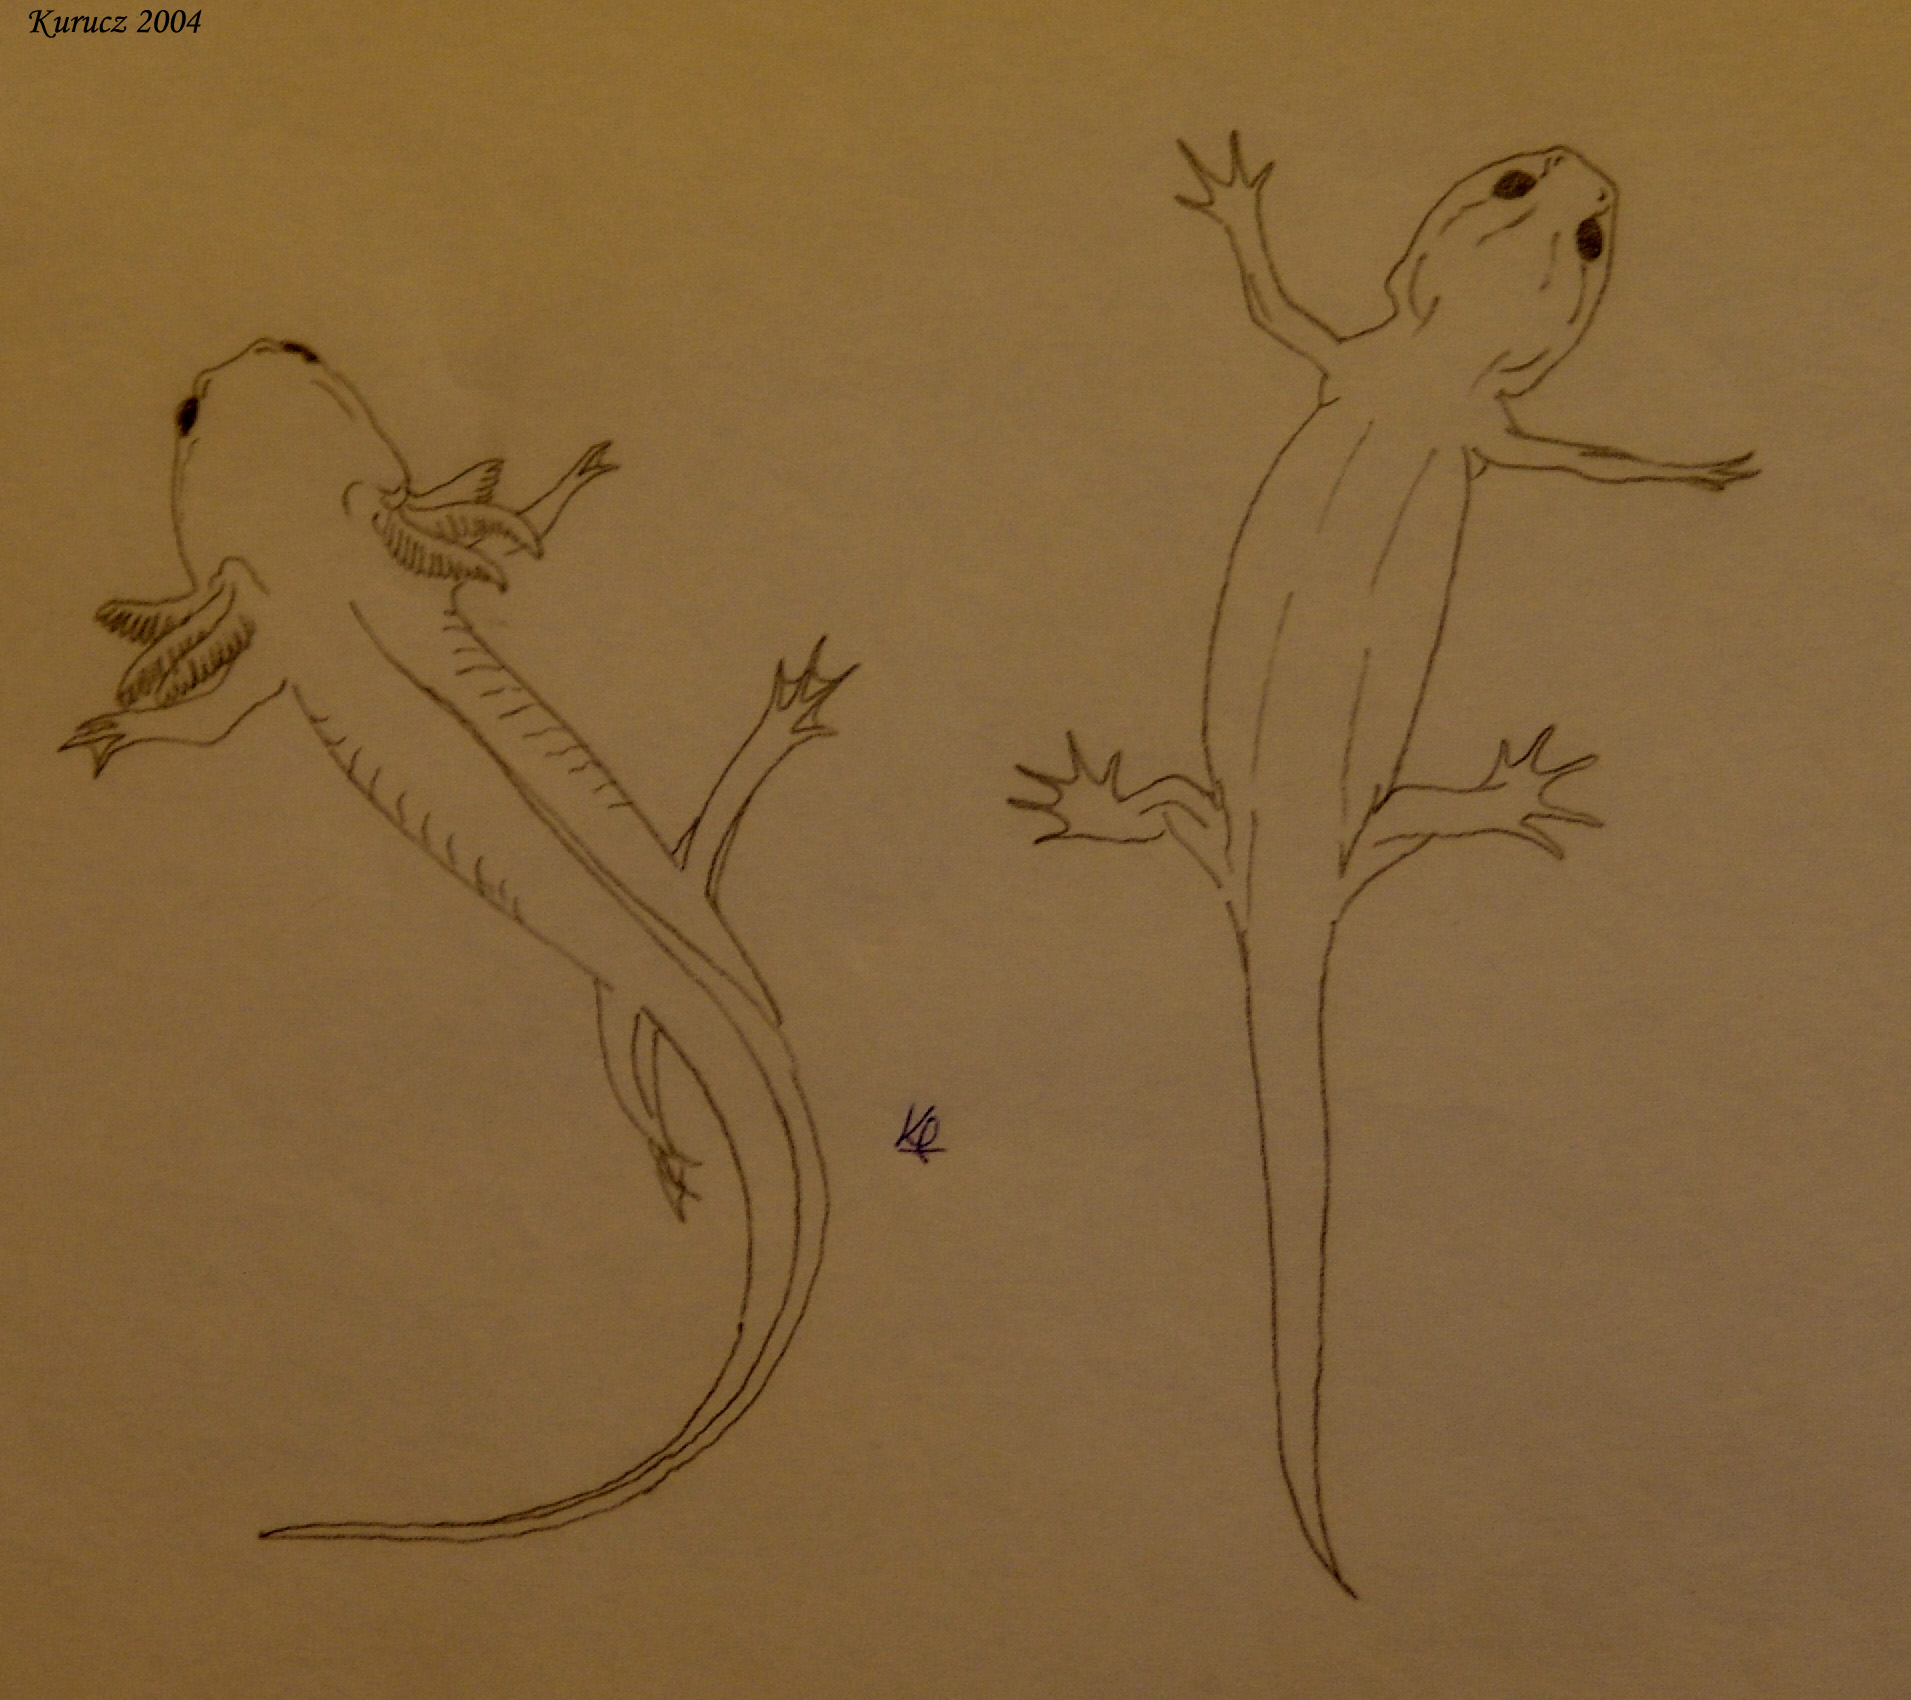 Az axolotl indukált metamorfózisa. A baloldali egyed az axolotl normális egyede, a jobboldalit tiroxinnal kezelték, előidézve metamorfózisát